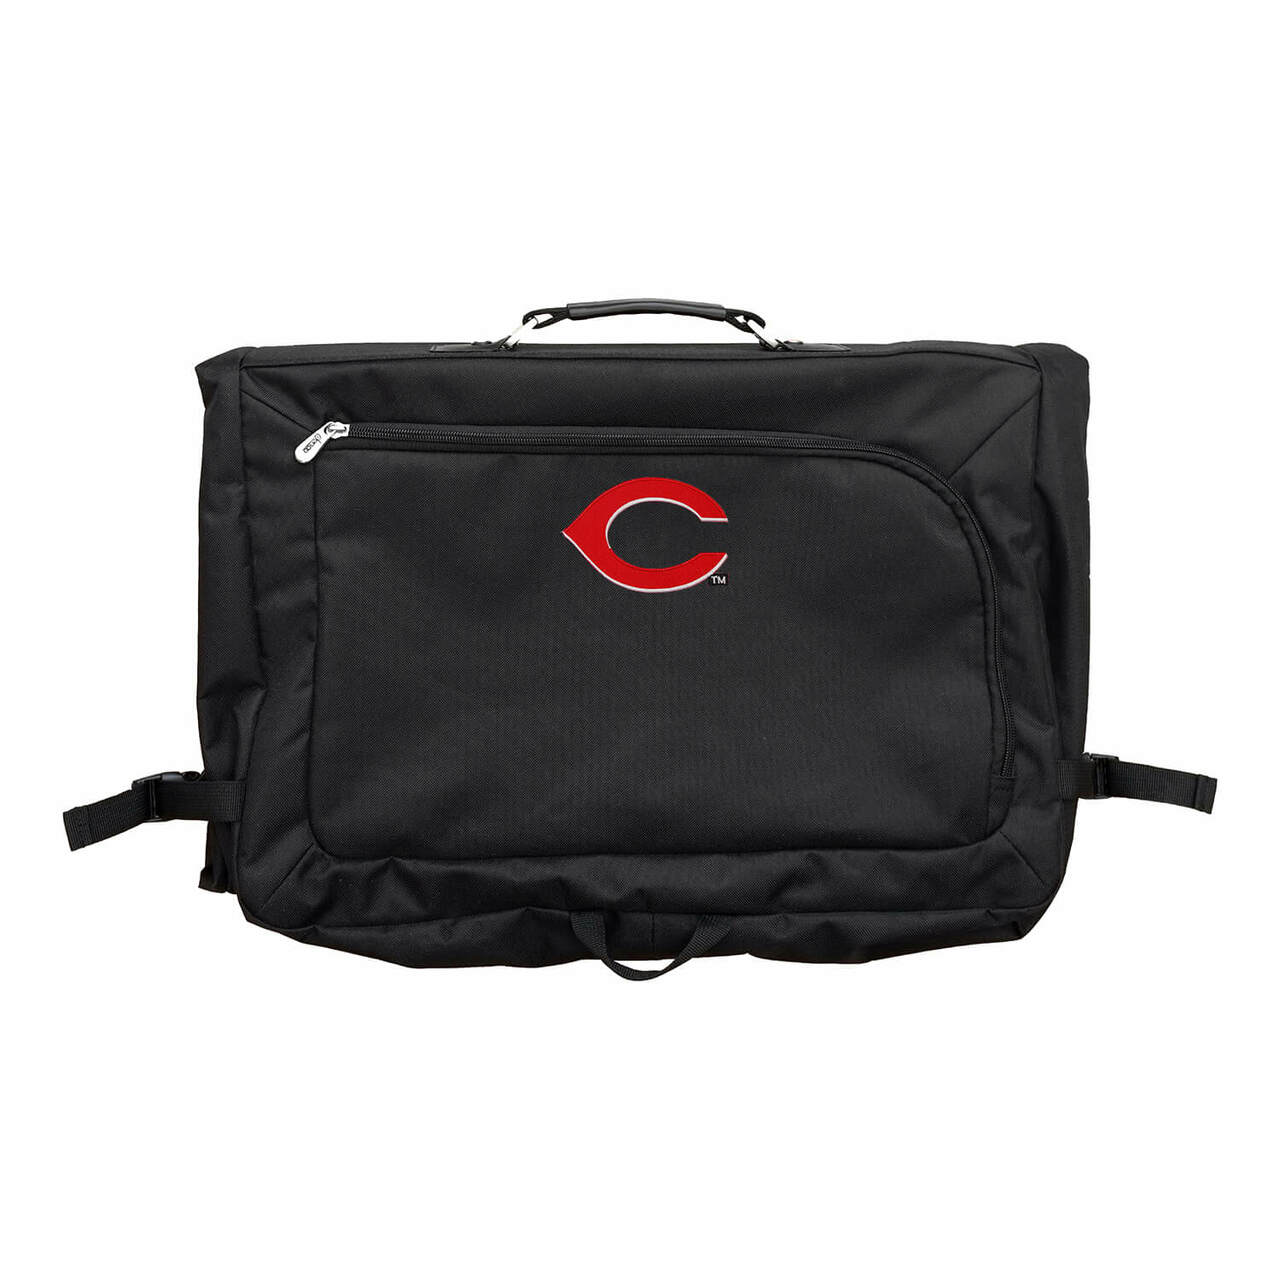 Cincinnati Reds 18" Carry On Garment Bag